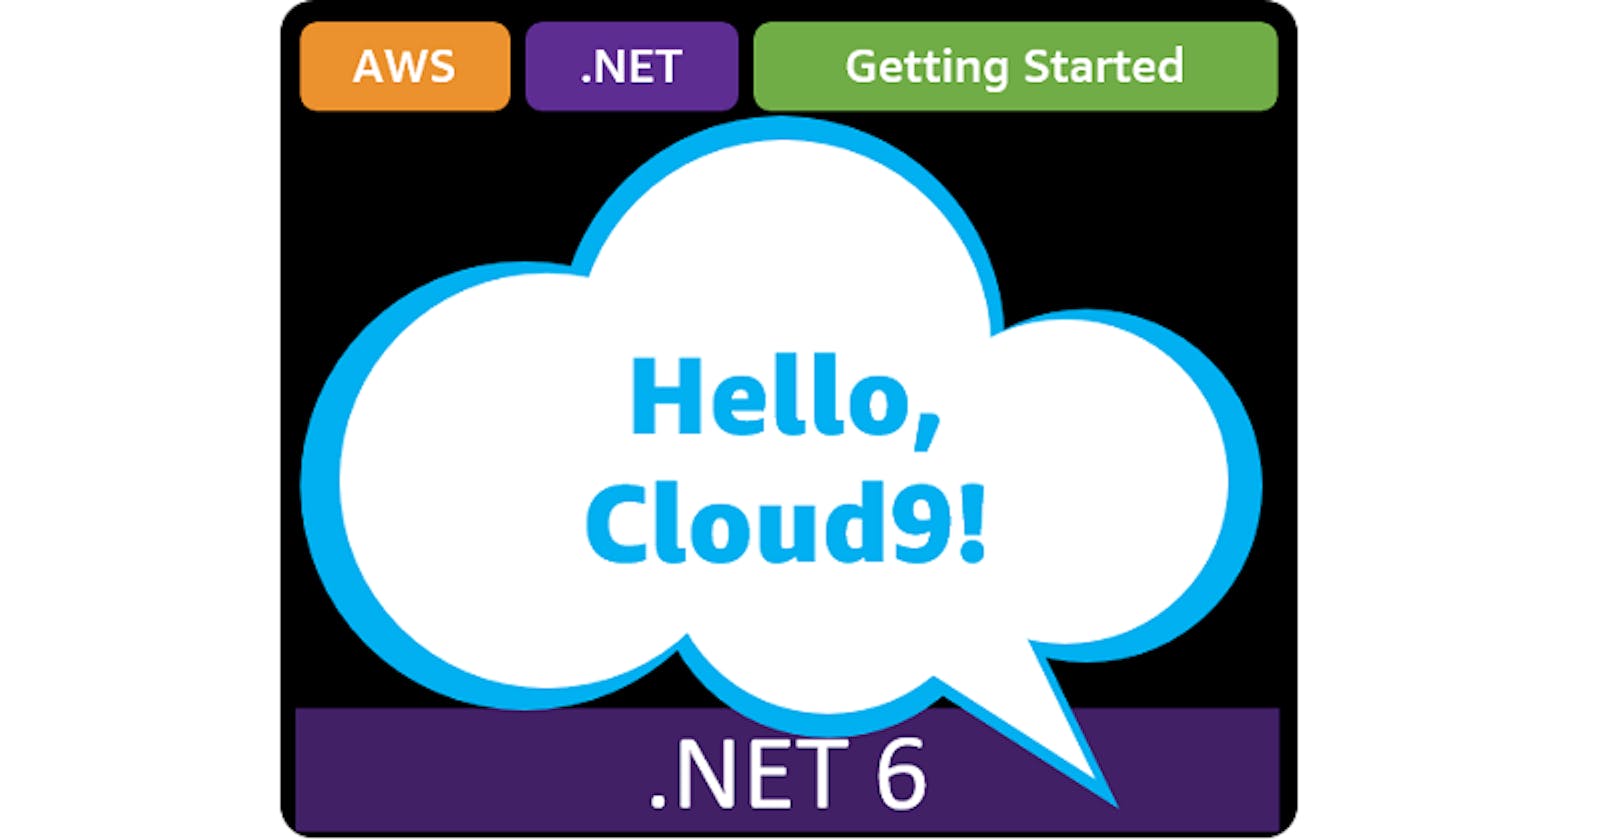 Hello, Cloud9!